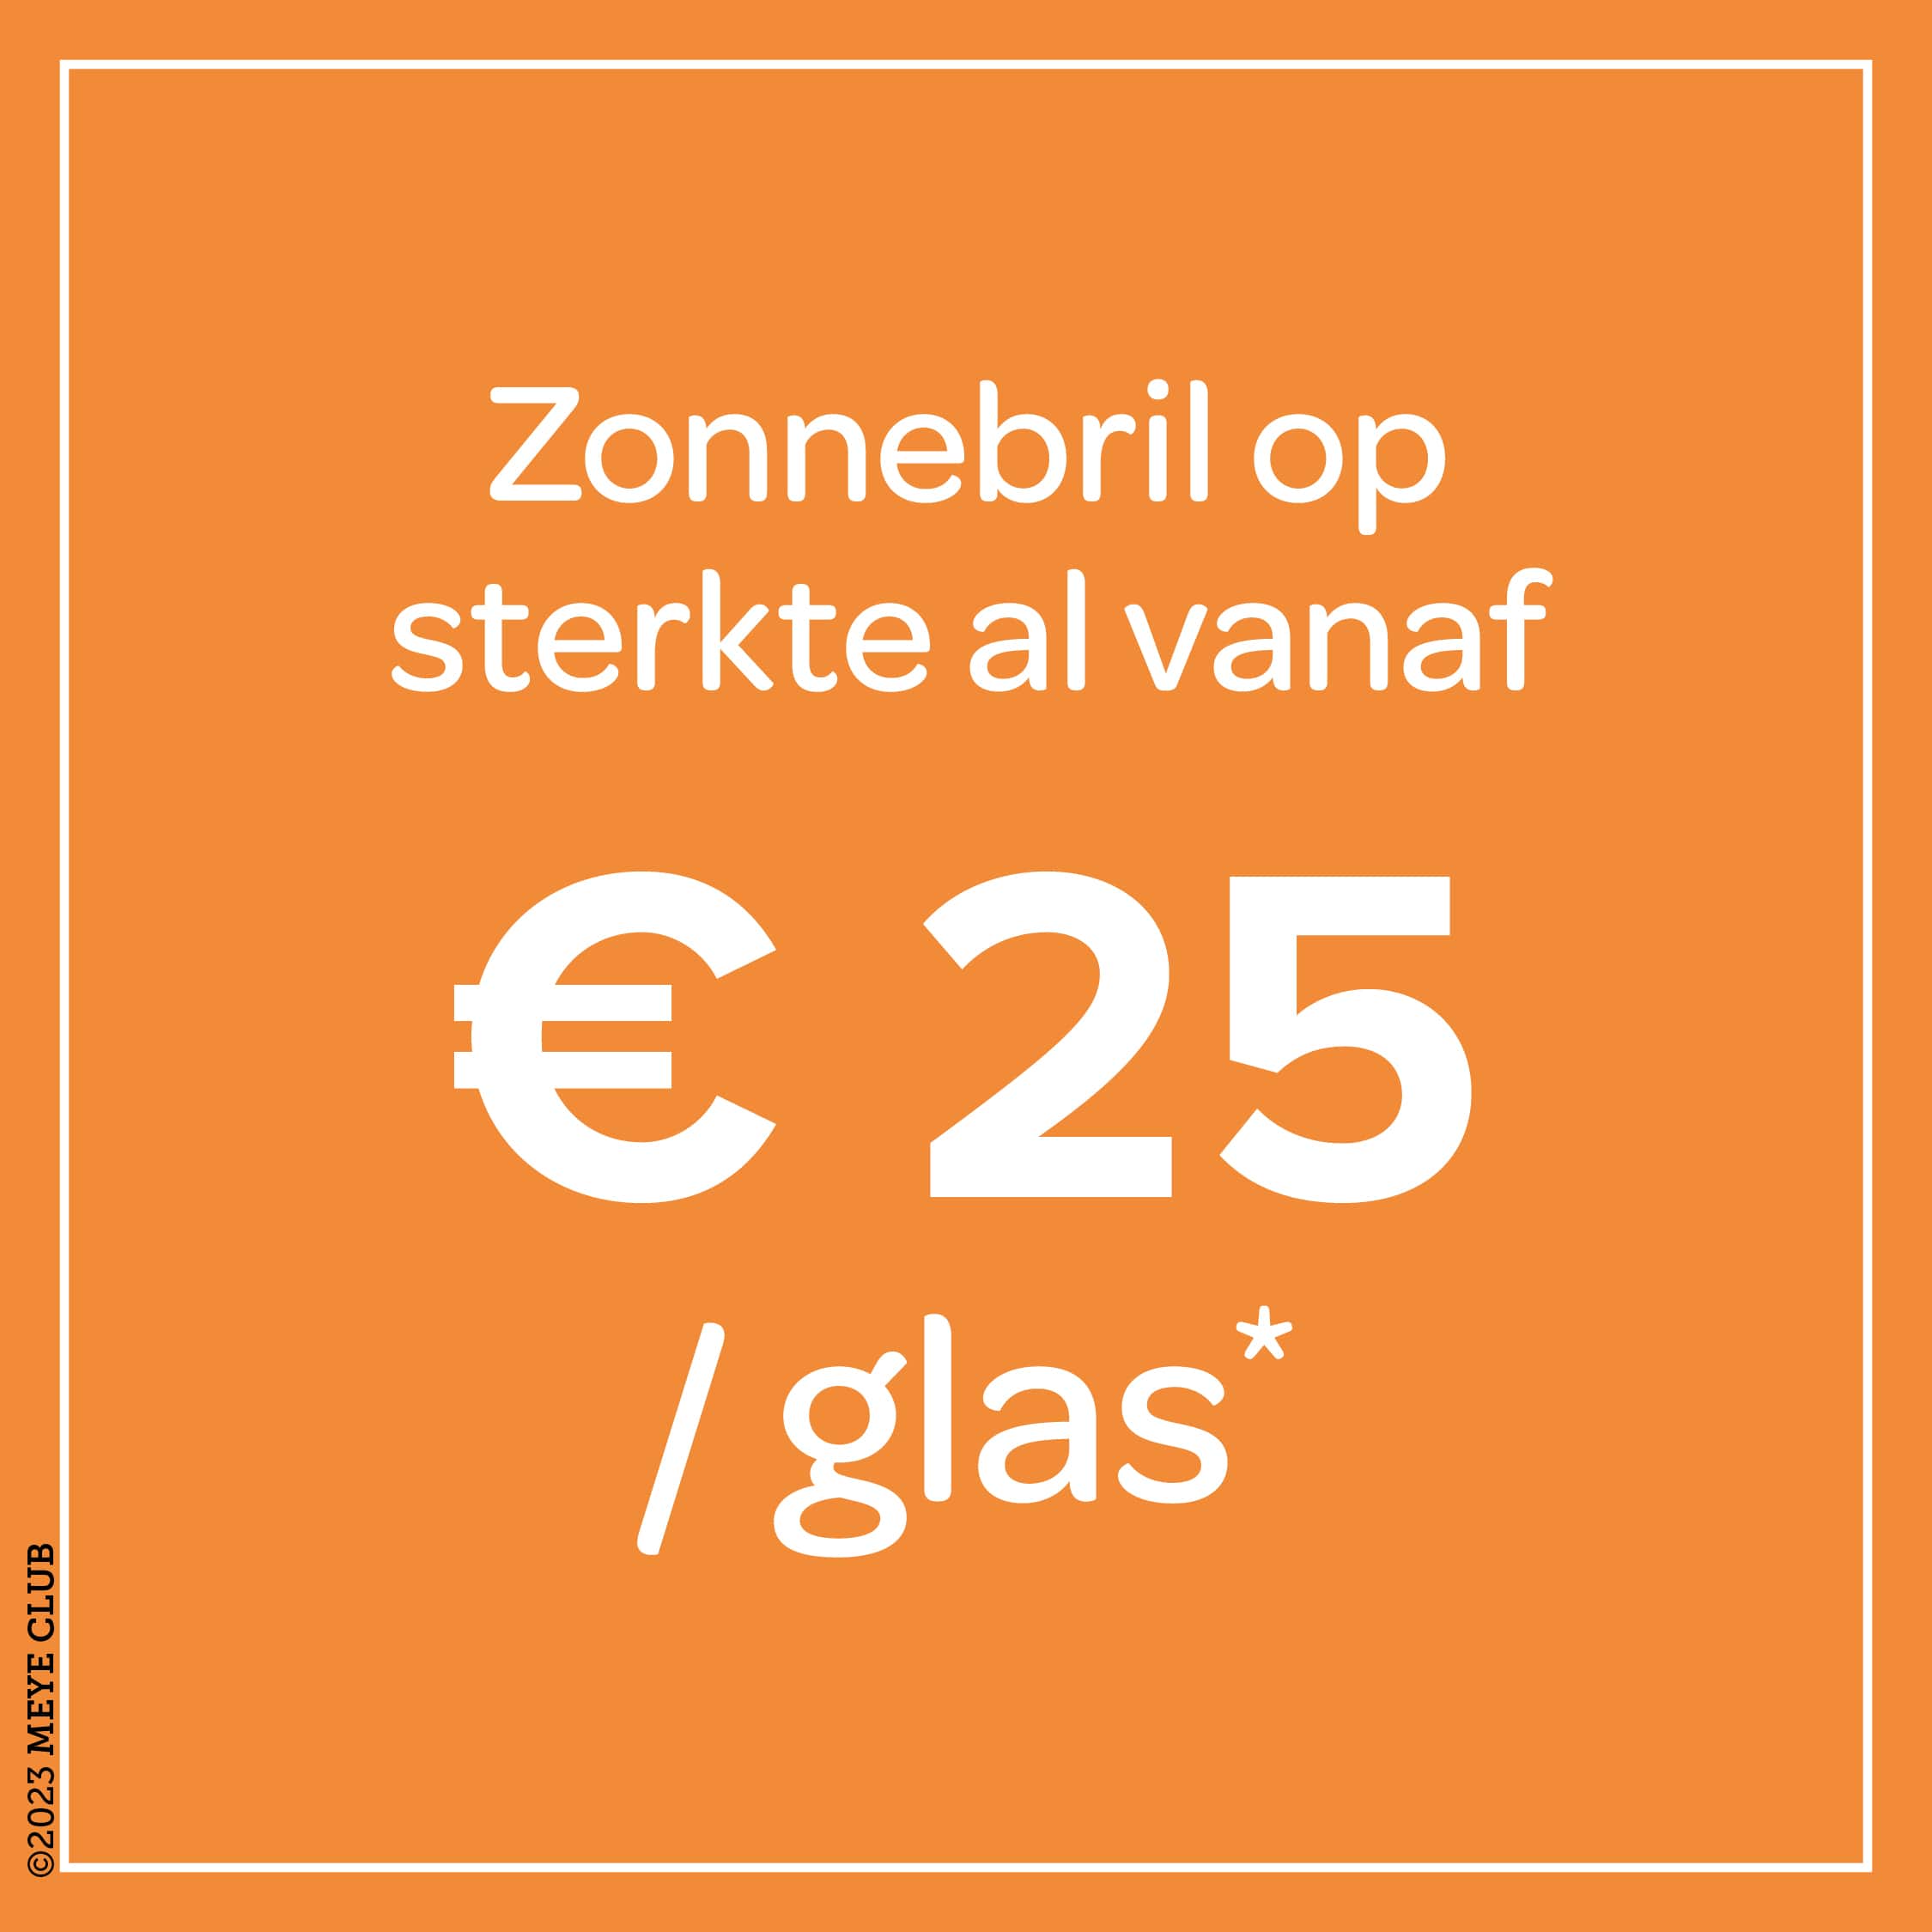 Zonnebril op sterkte, al vanaf € 25 per glas